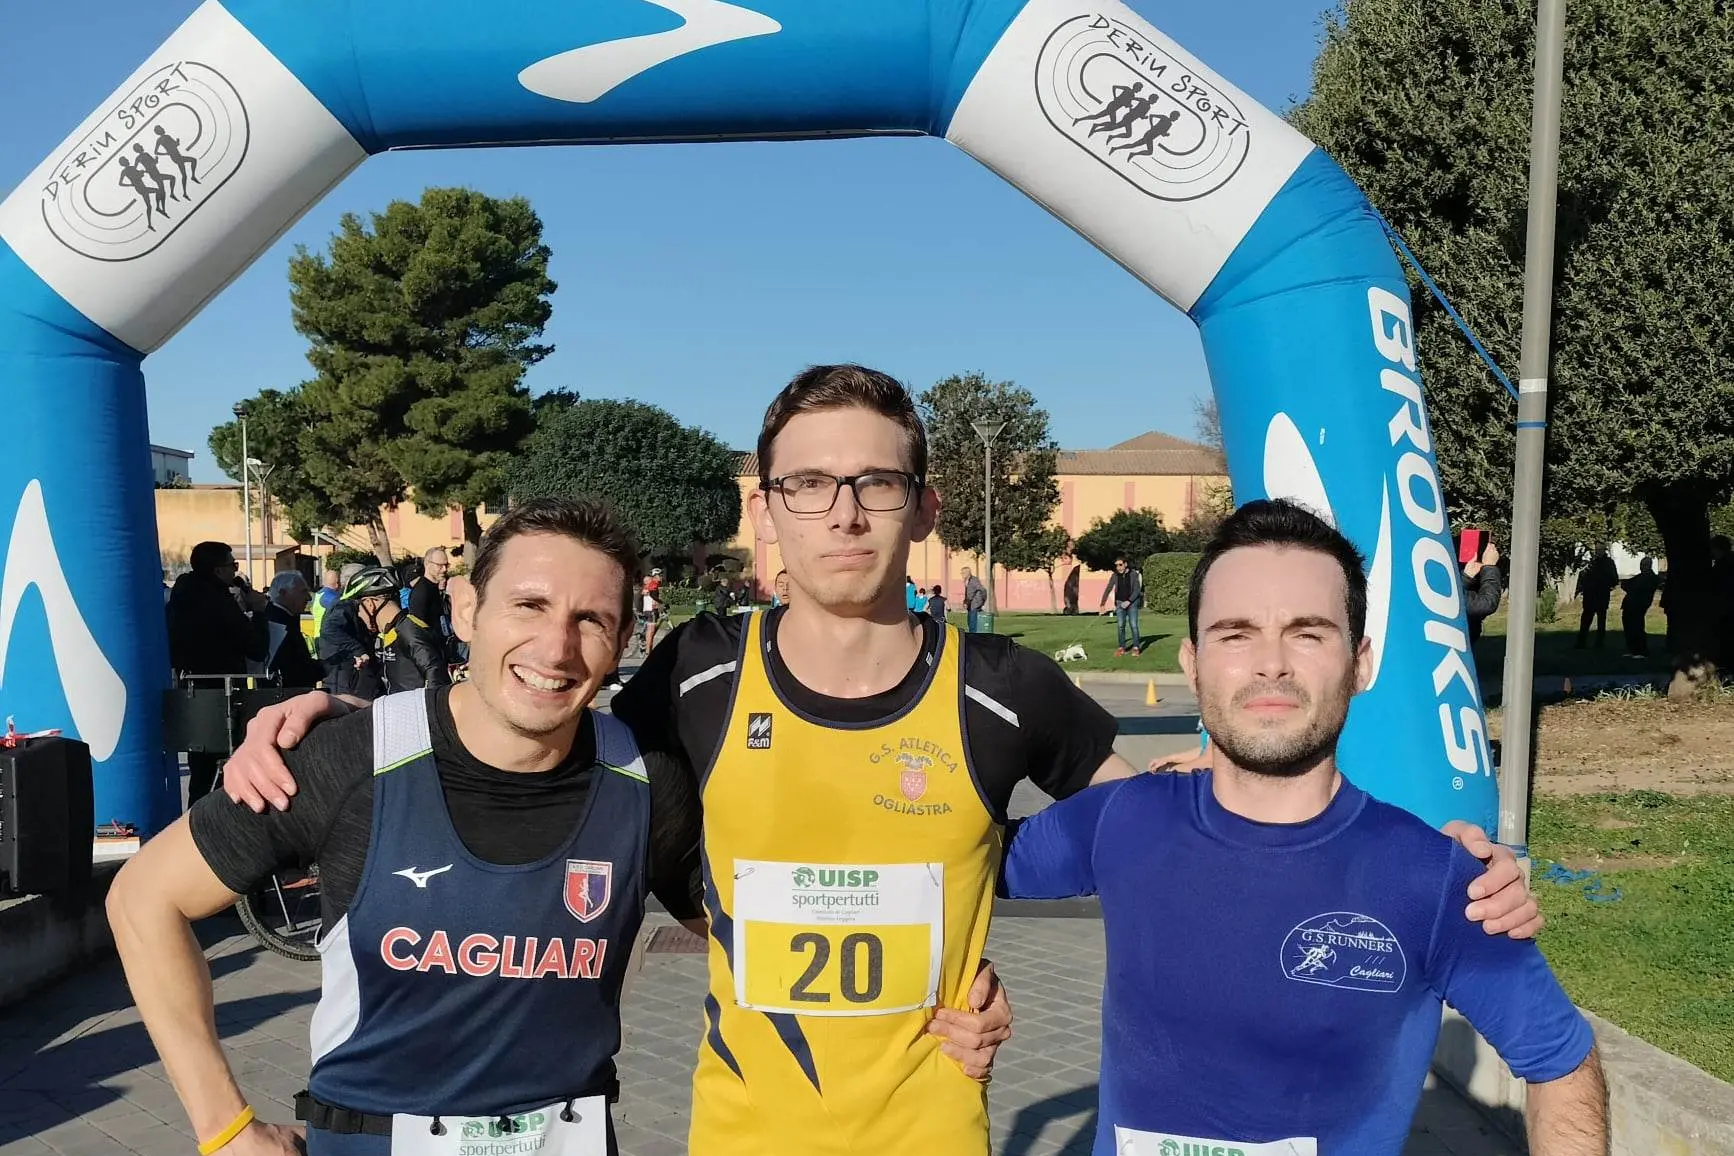 Al centro il vincitore Valerio Caredda, 18 anni, a sinistra il terzo classificato Maurizio Cocco 36 anni a destra il secondo classificato Edoardo Cittadini 26 anni (foto di Mattia Lasio).